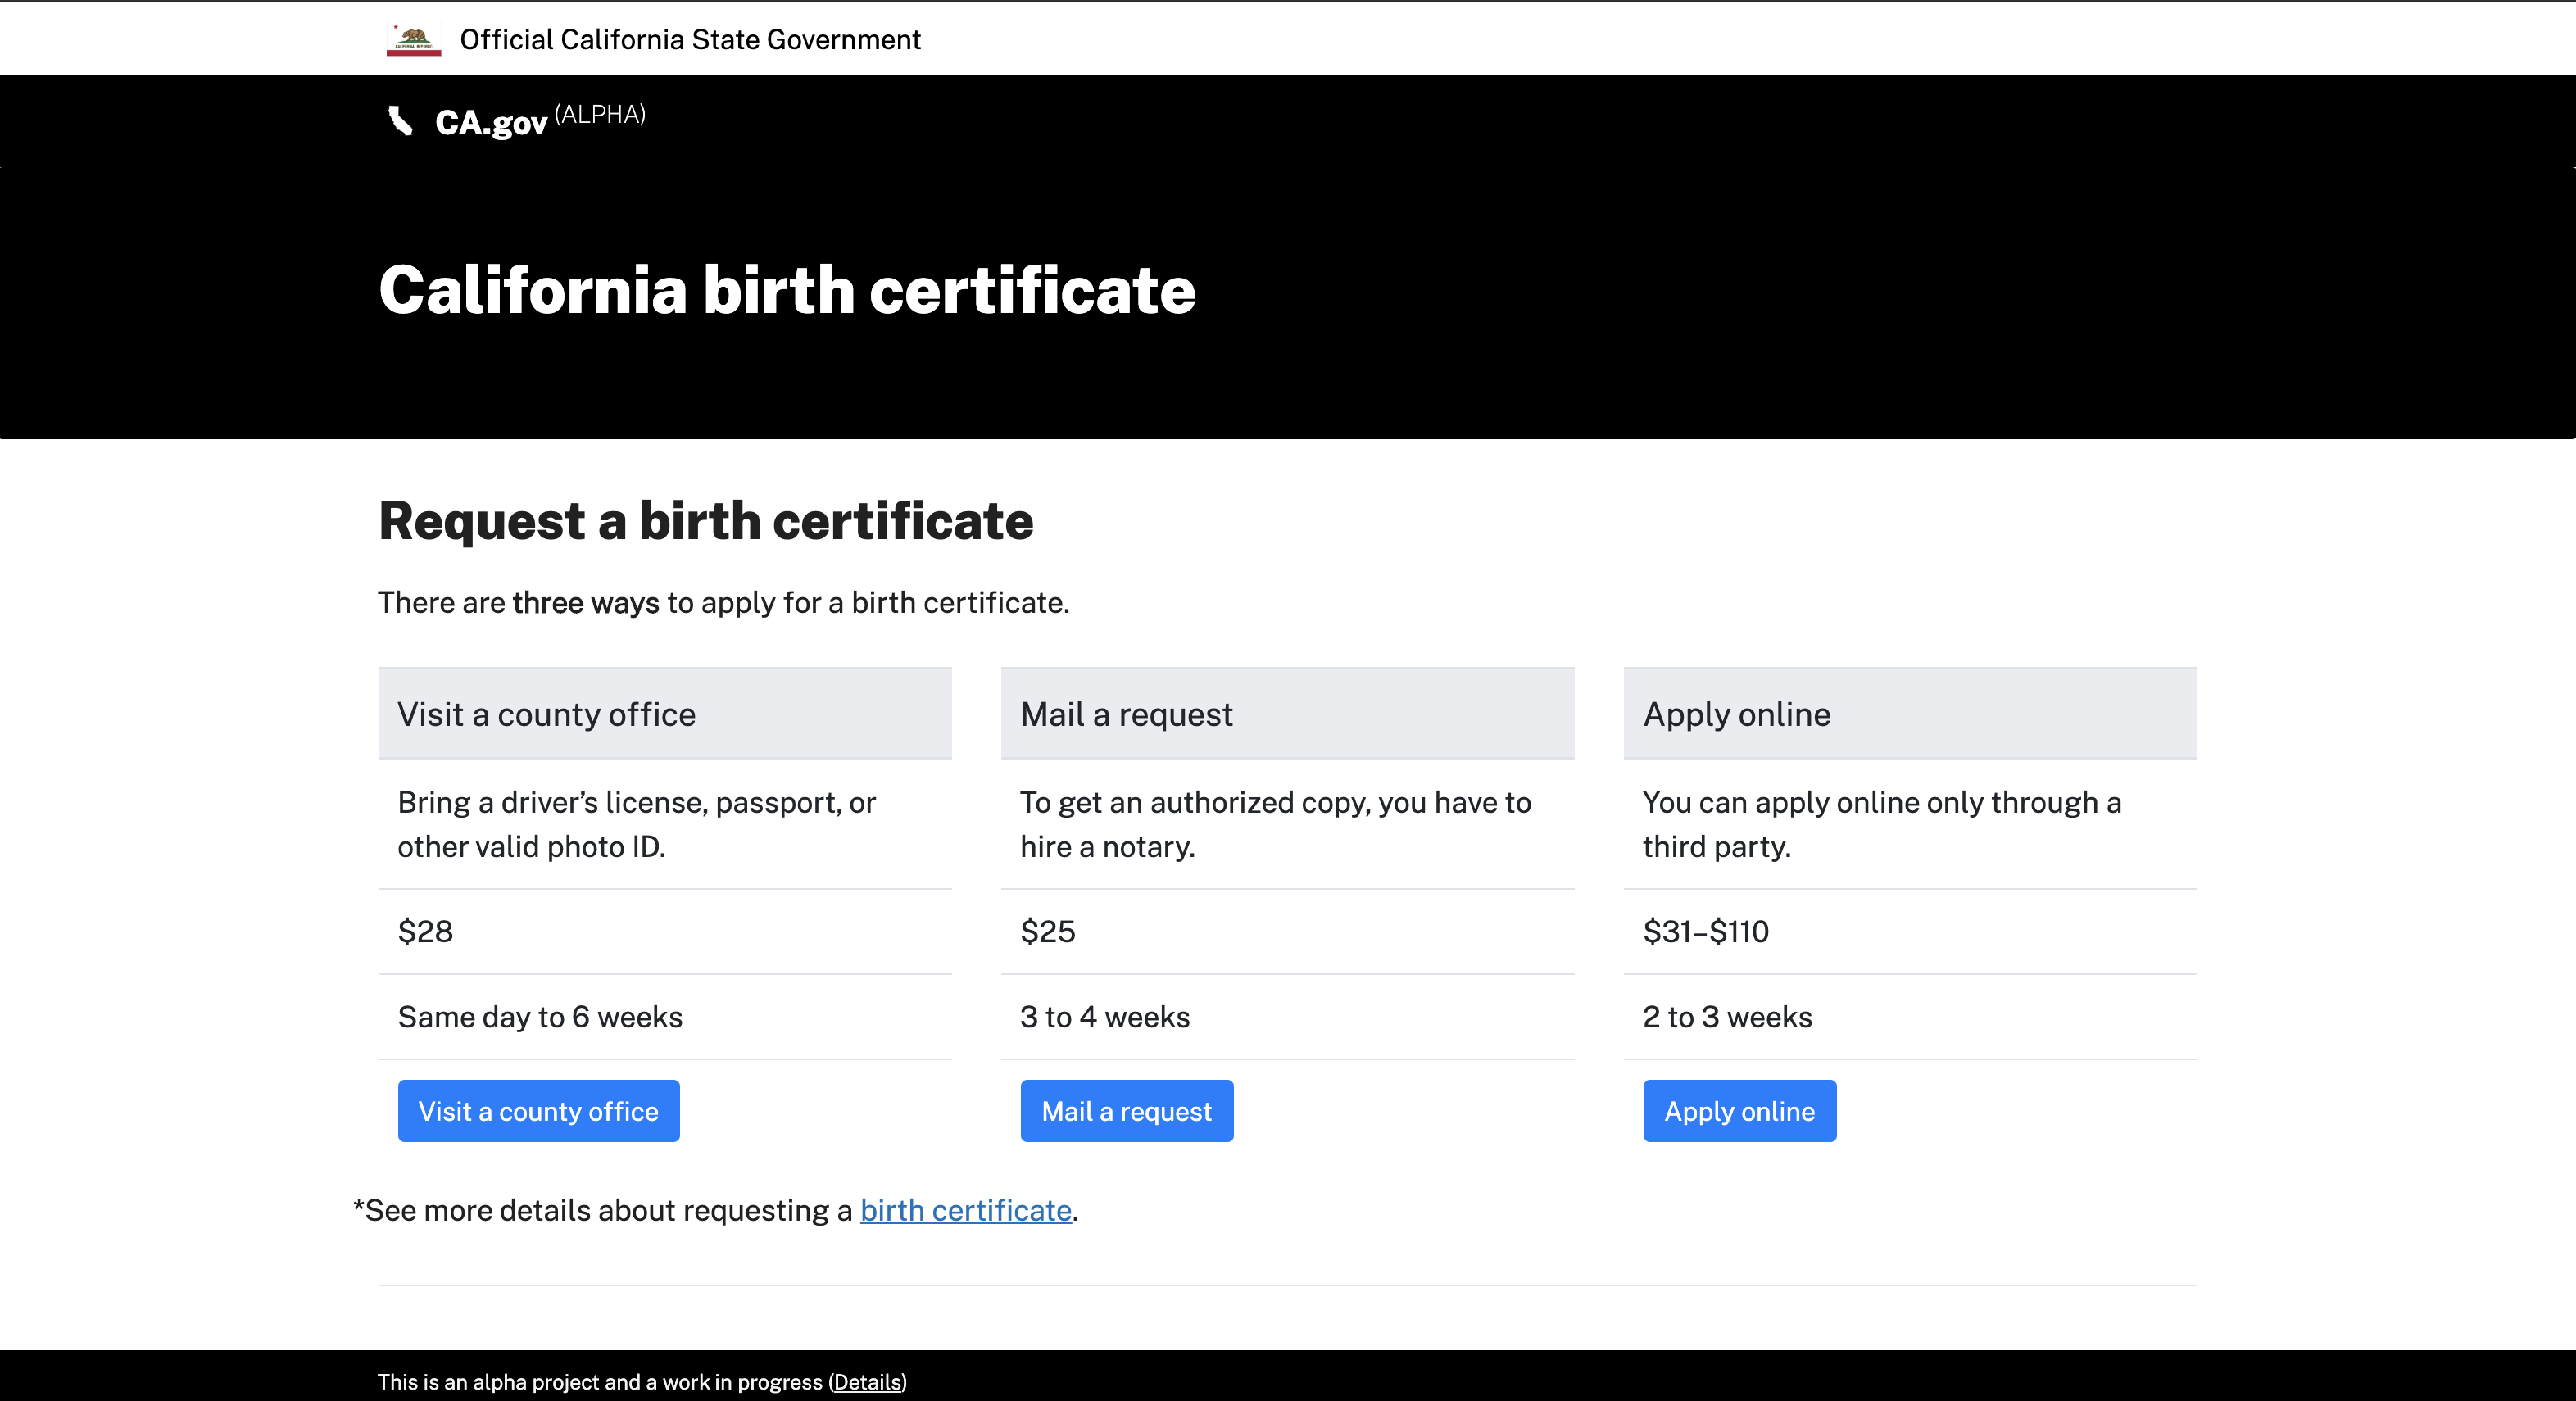 Screenshot of the current CA.gov “Request a birth certificate”